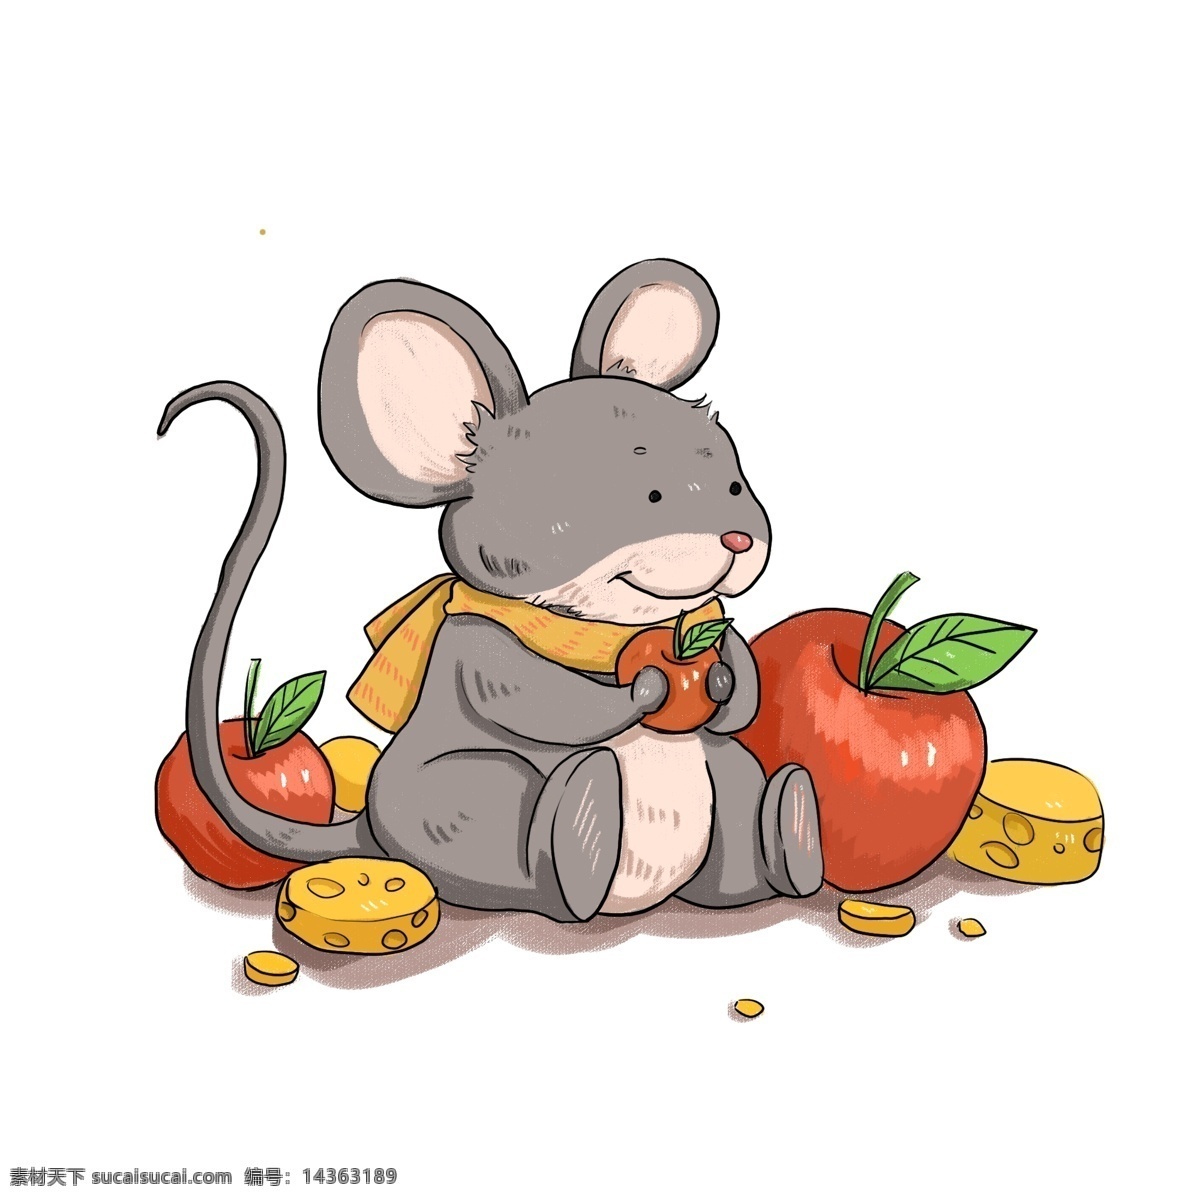 老鼠吃苹果 卡通老鼠 老鼠 老鼠元素 鼠年 老鼠素材 老鼠插画 新年老鼠 特辑 招贴设计